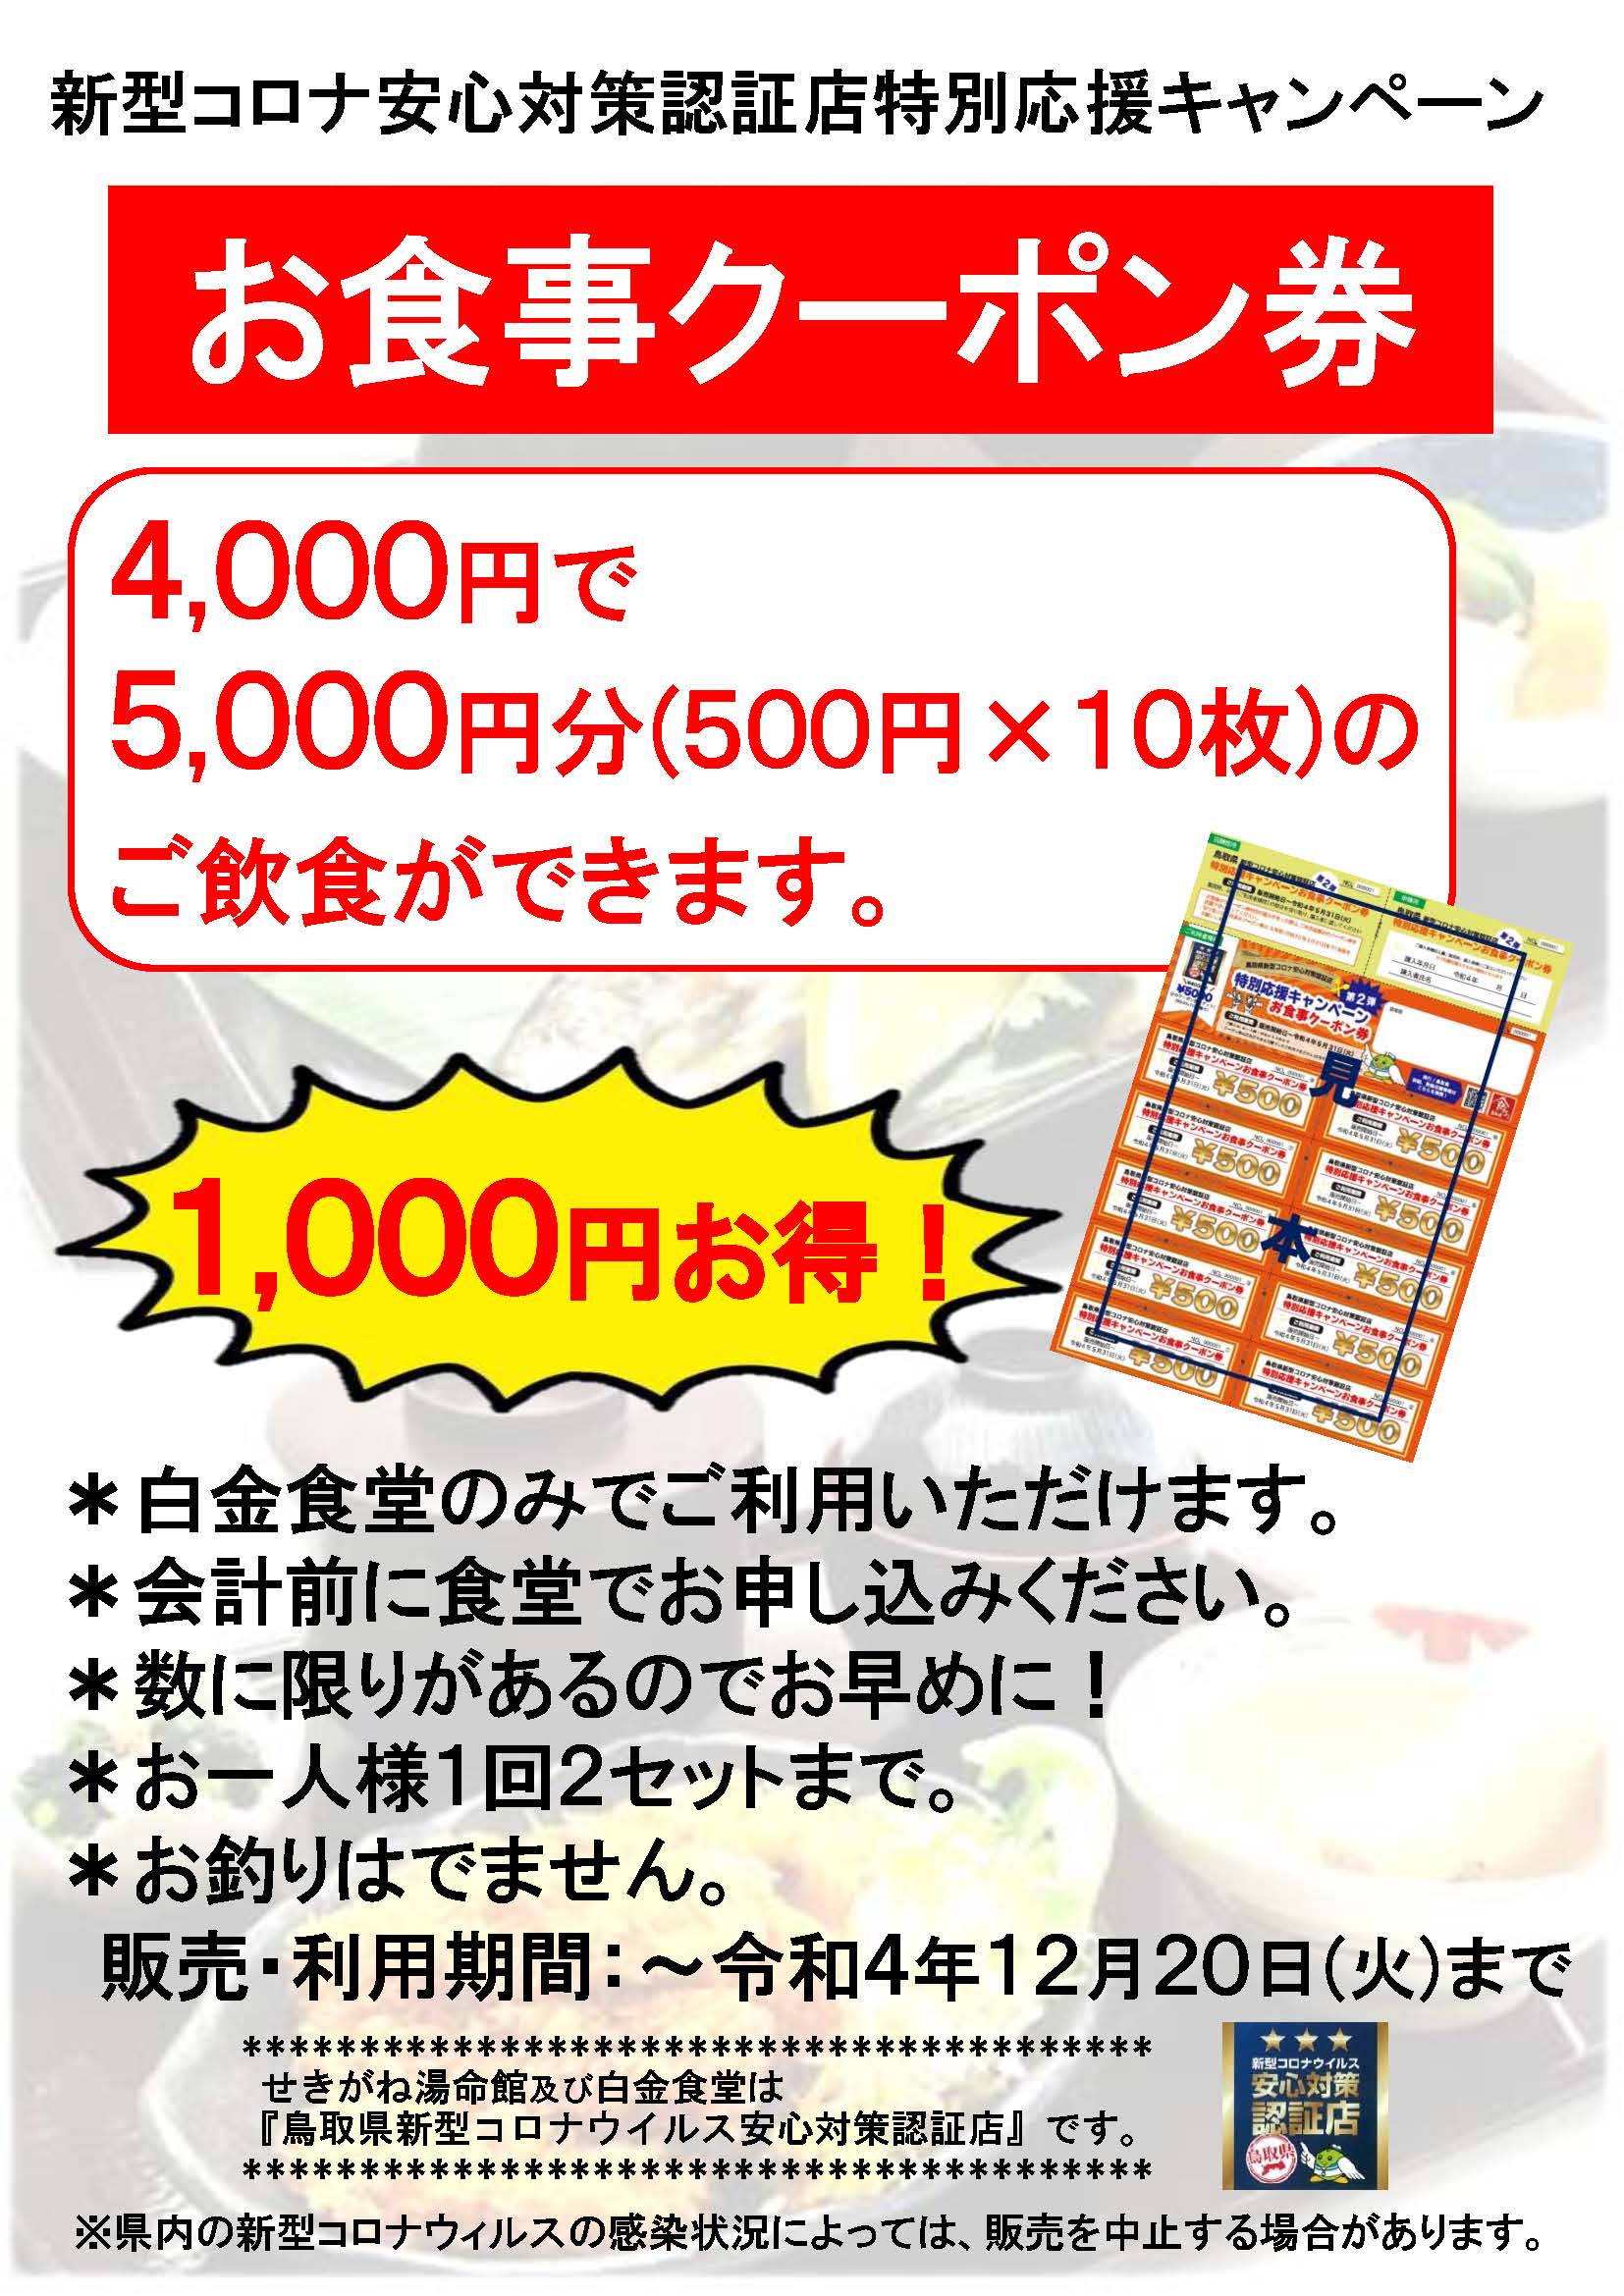 WBF クーポン 食事券 7000円分